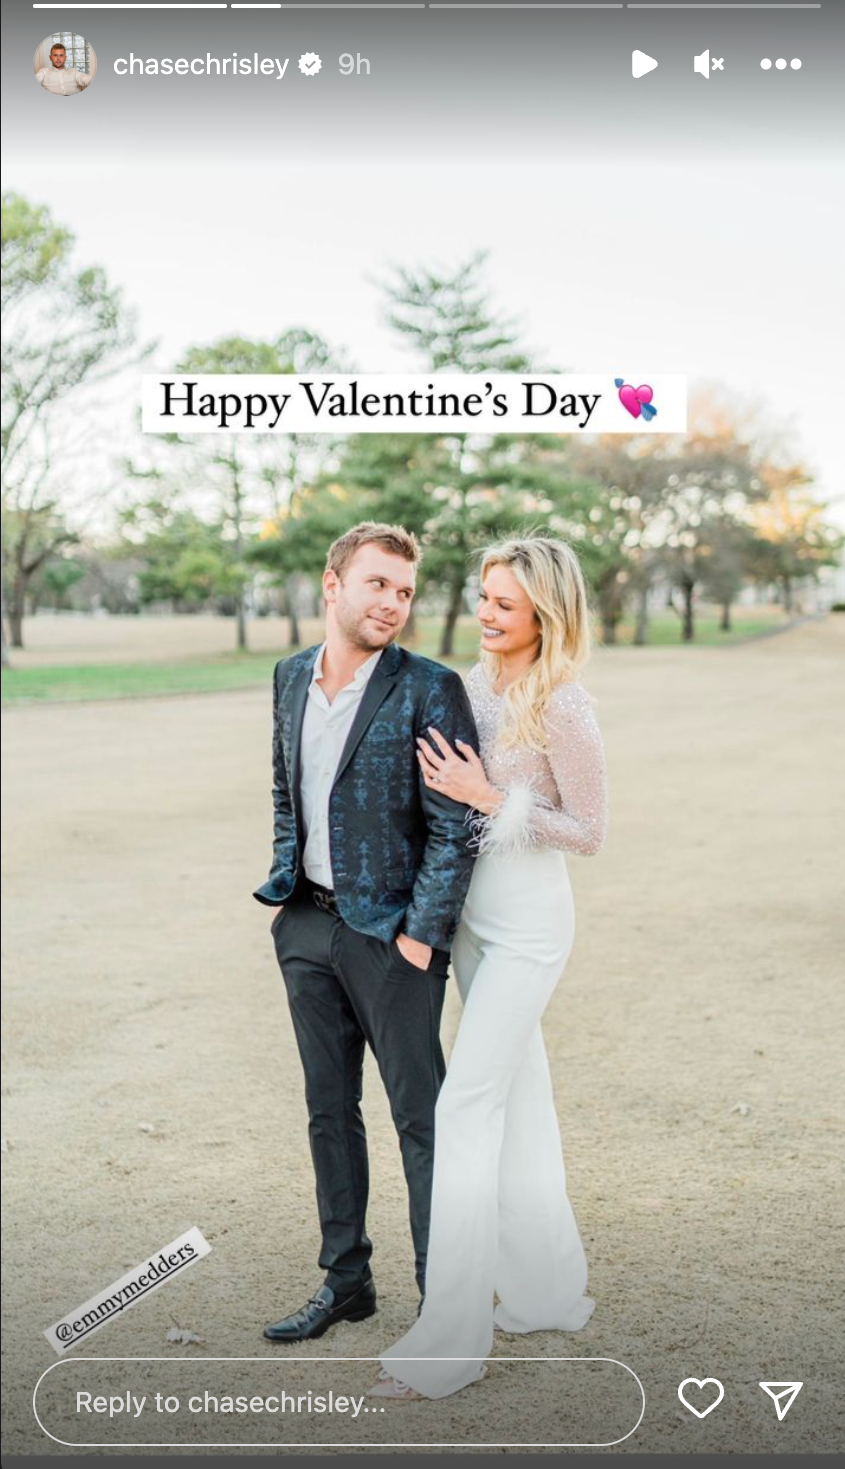 Chase Chrisley and fiancée's Valentine's Day celebration